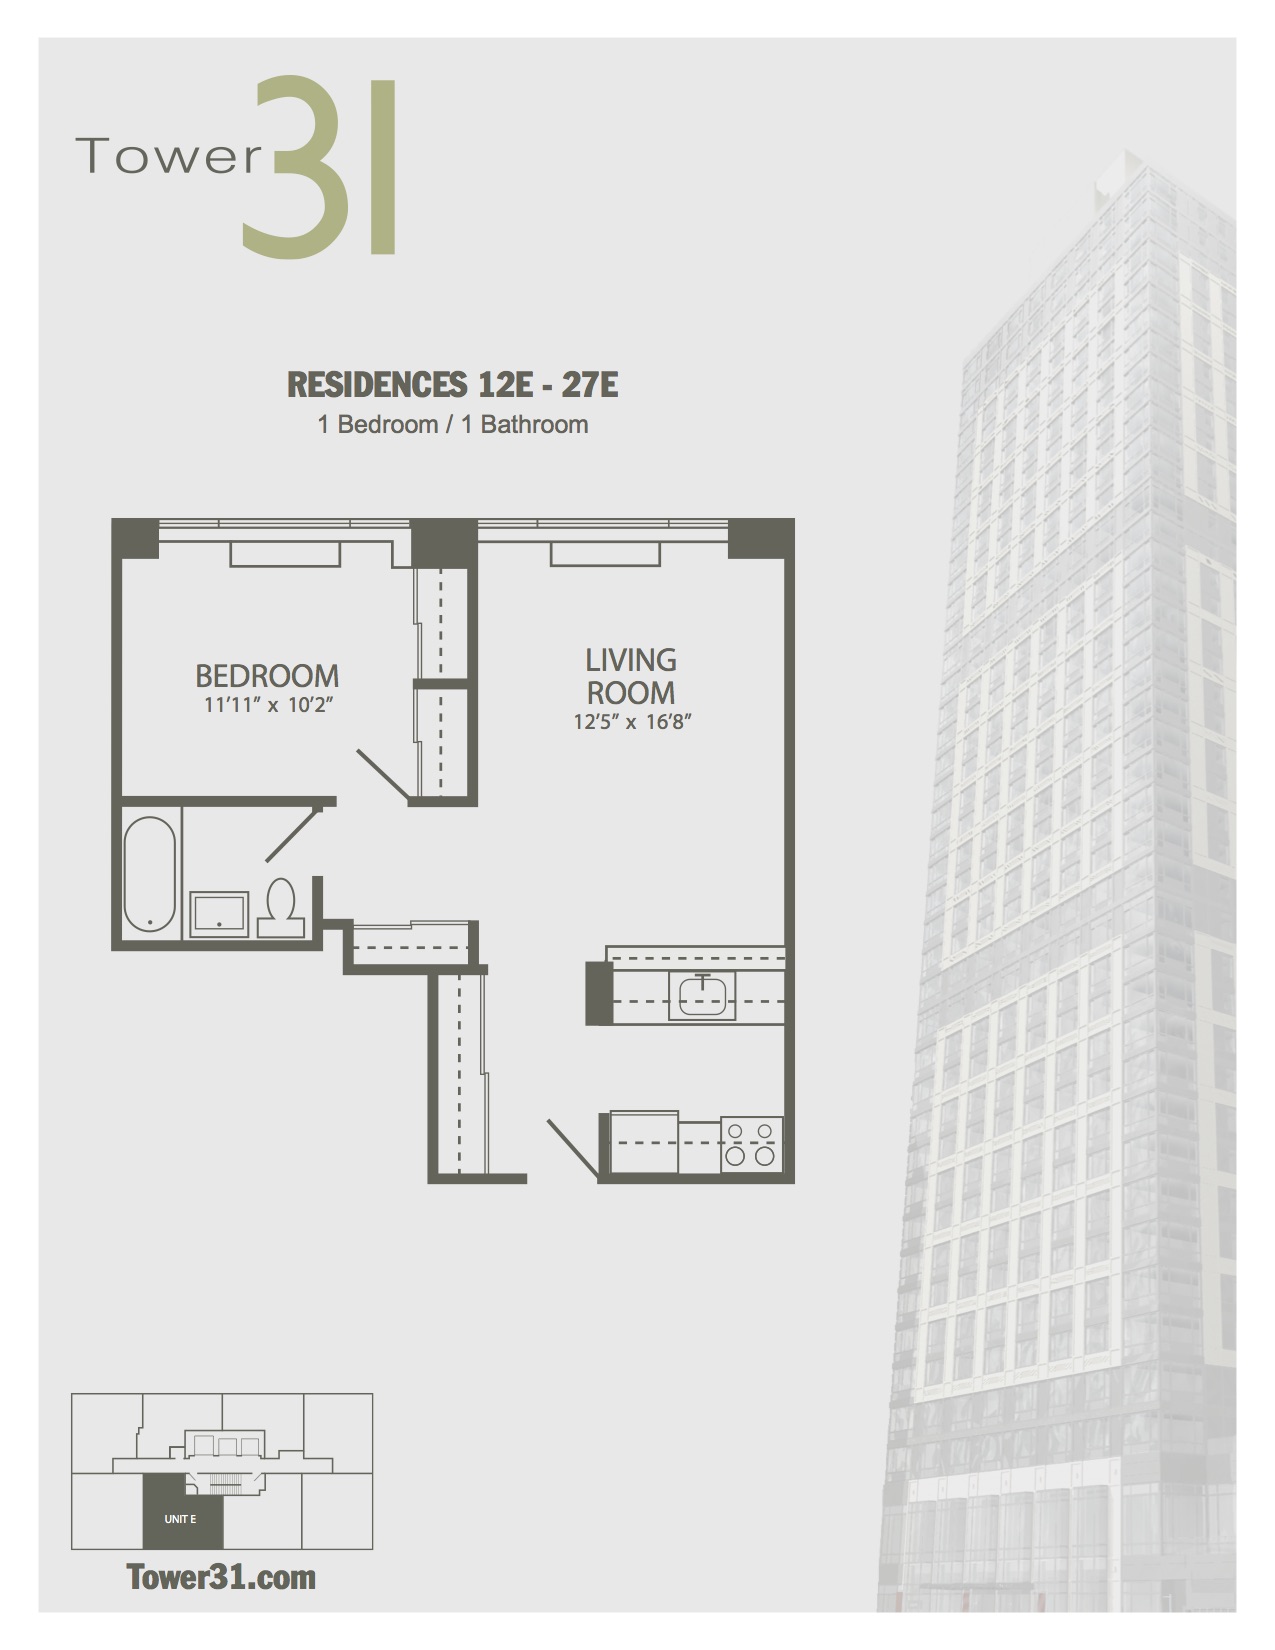 Residence E Floors 12-27